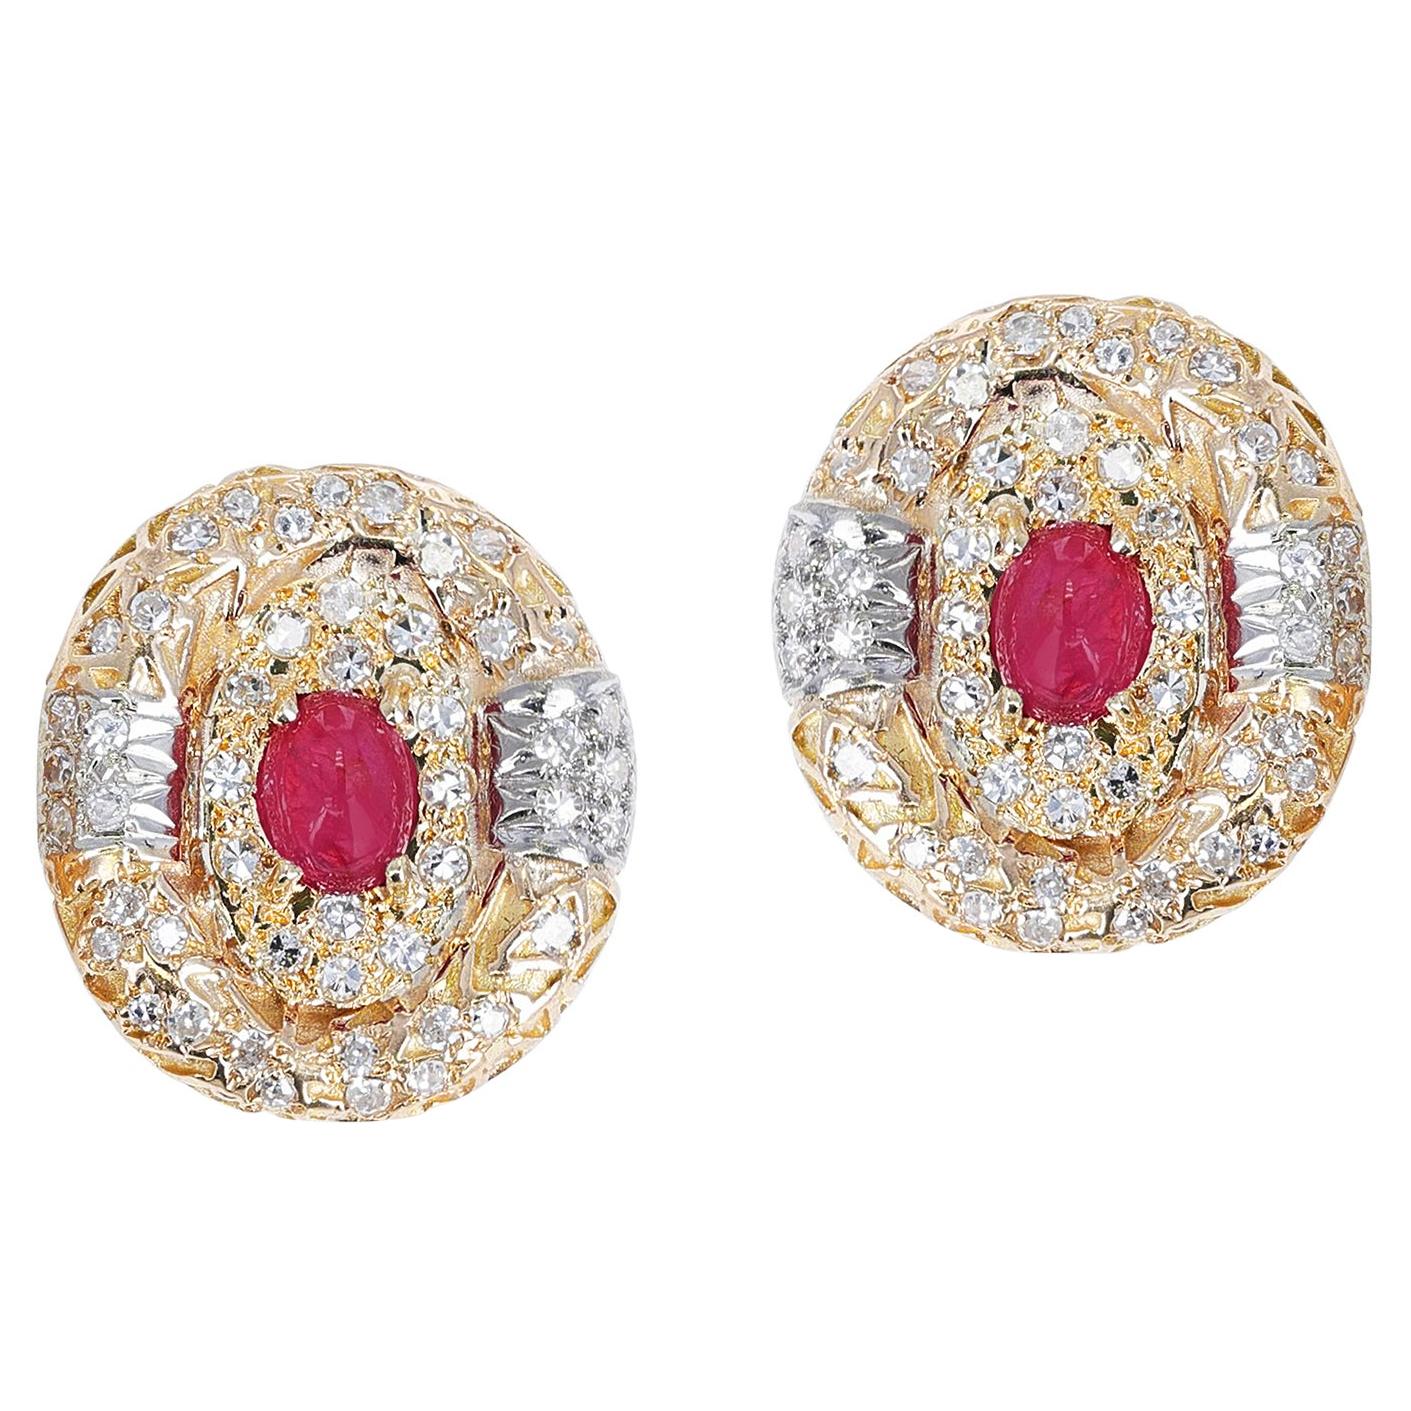 Ovale Ohrringe aus gehämmertem Gold, Rubin-Cabochon und Diamant, 18 Karat